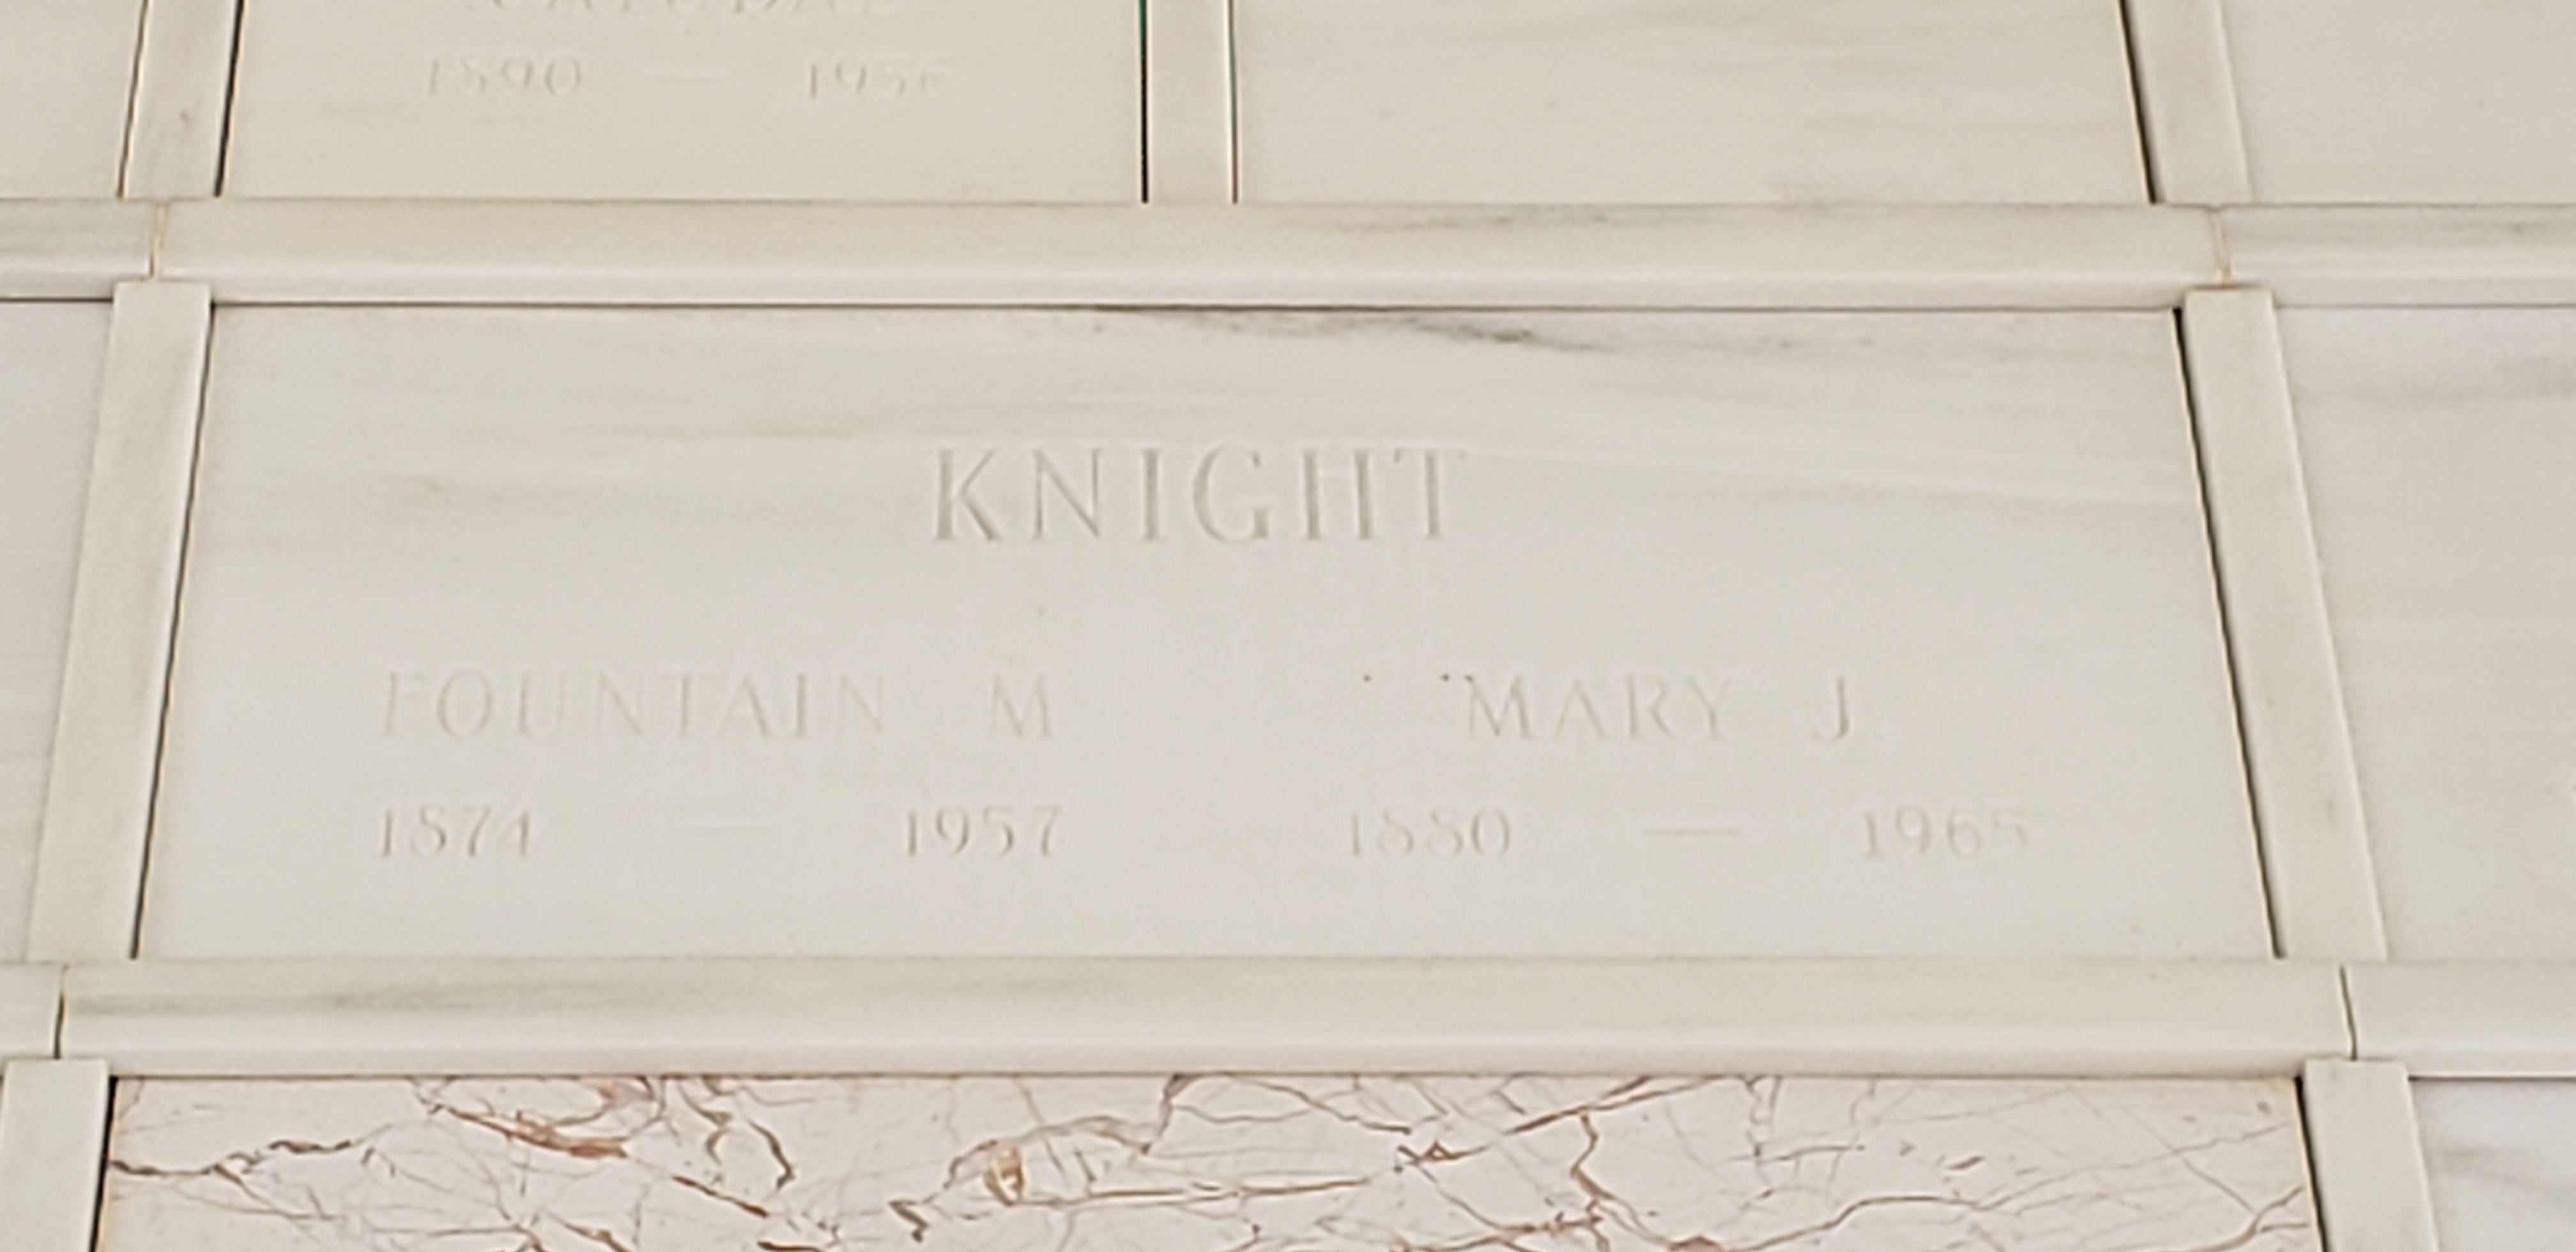 Mary J Knight